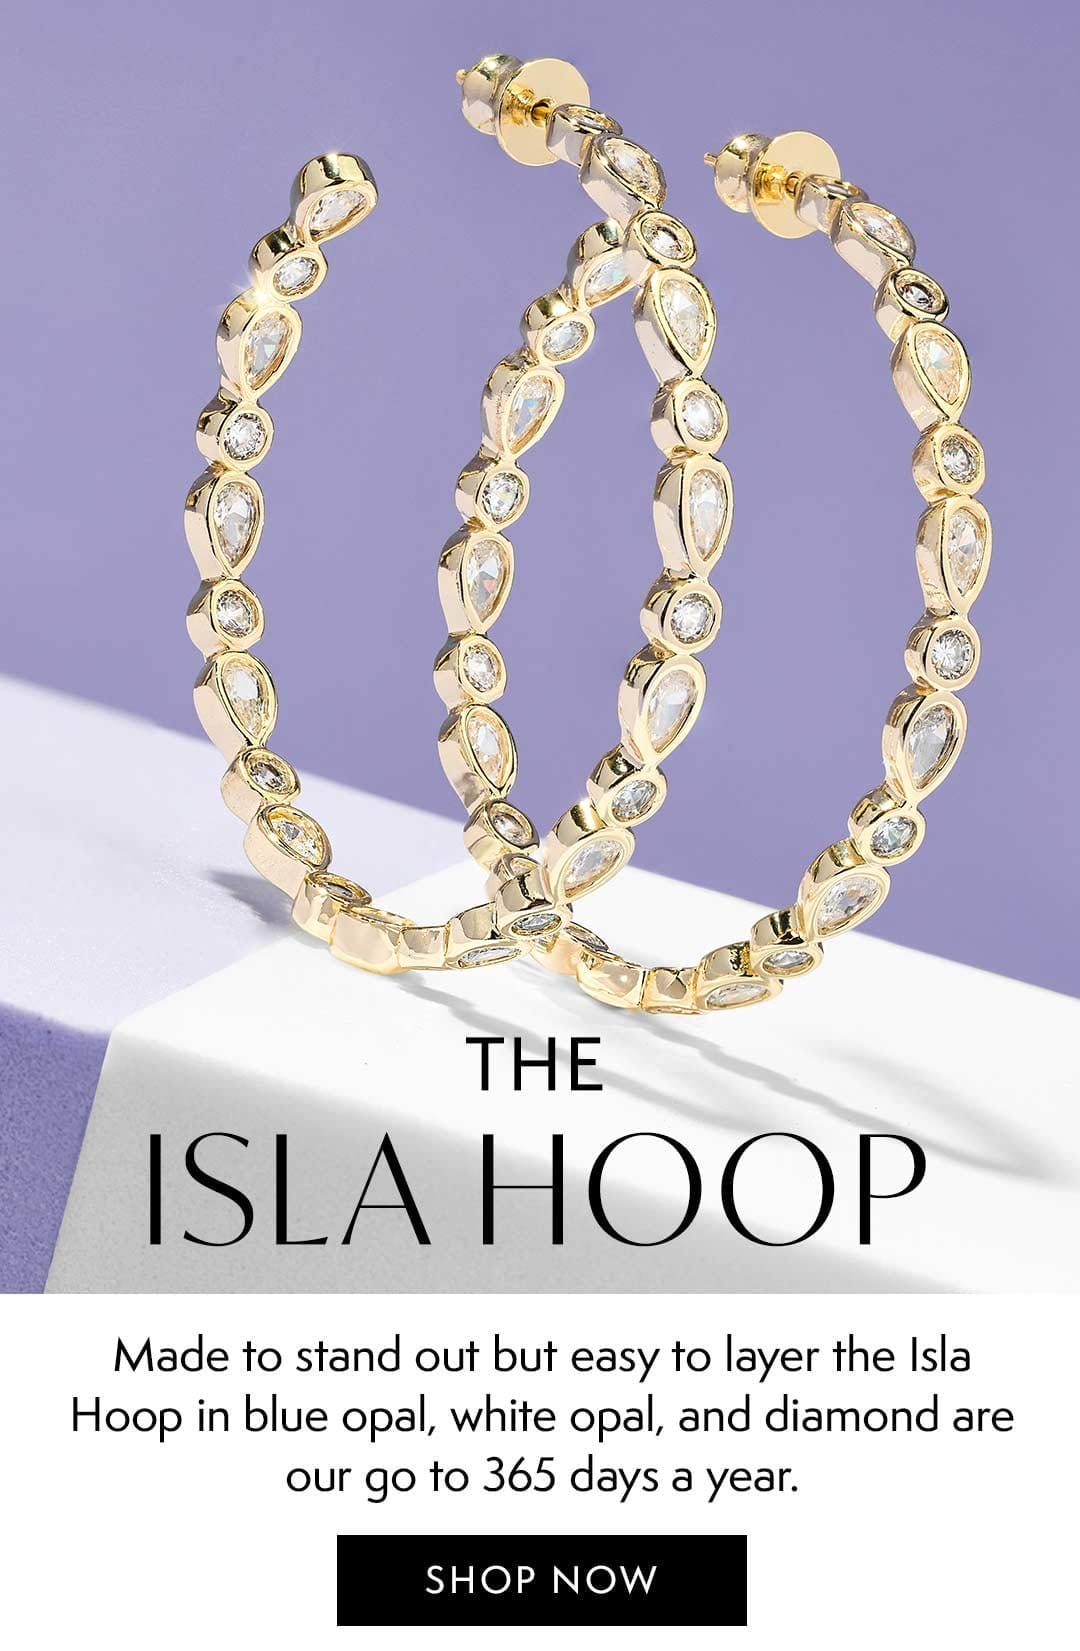 The Isla Hoop